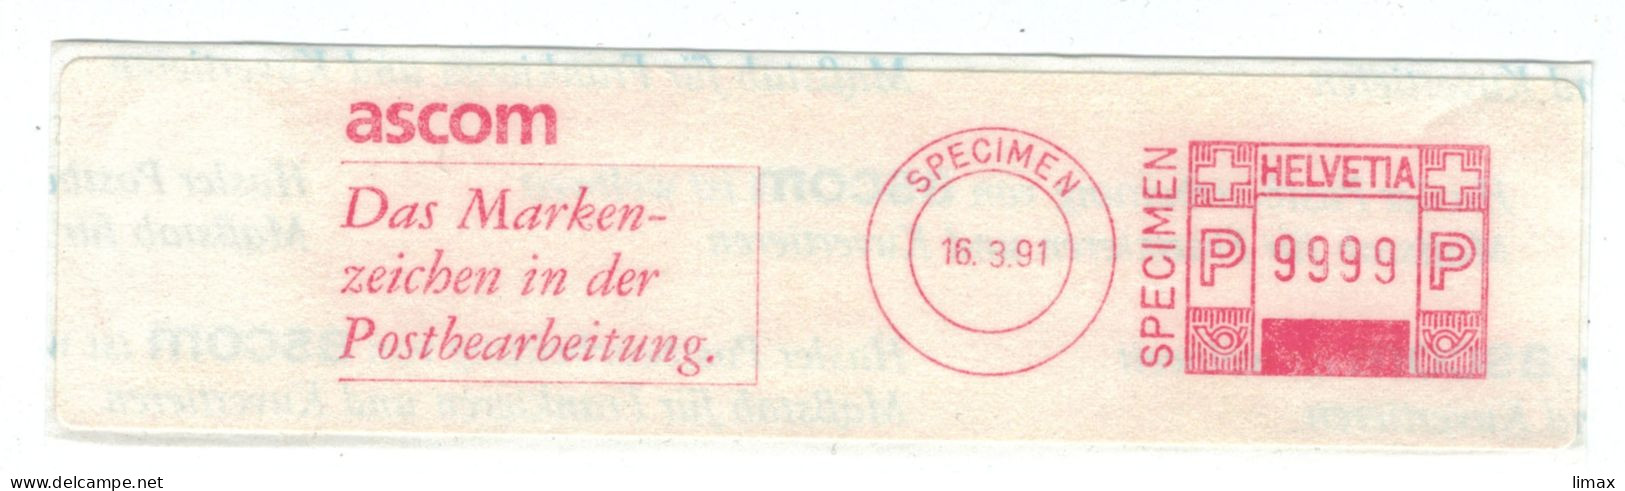 Ascom - Markenzeichen Postbearbeitung Specimen 1991 Muster 9999 - Postage Meters